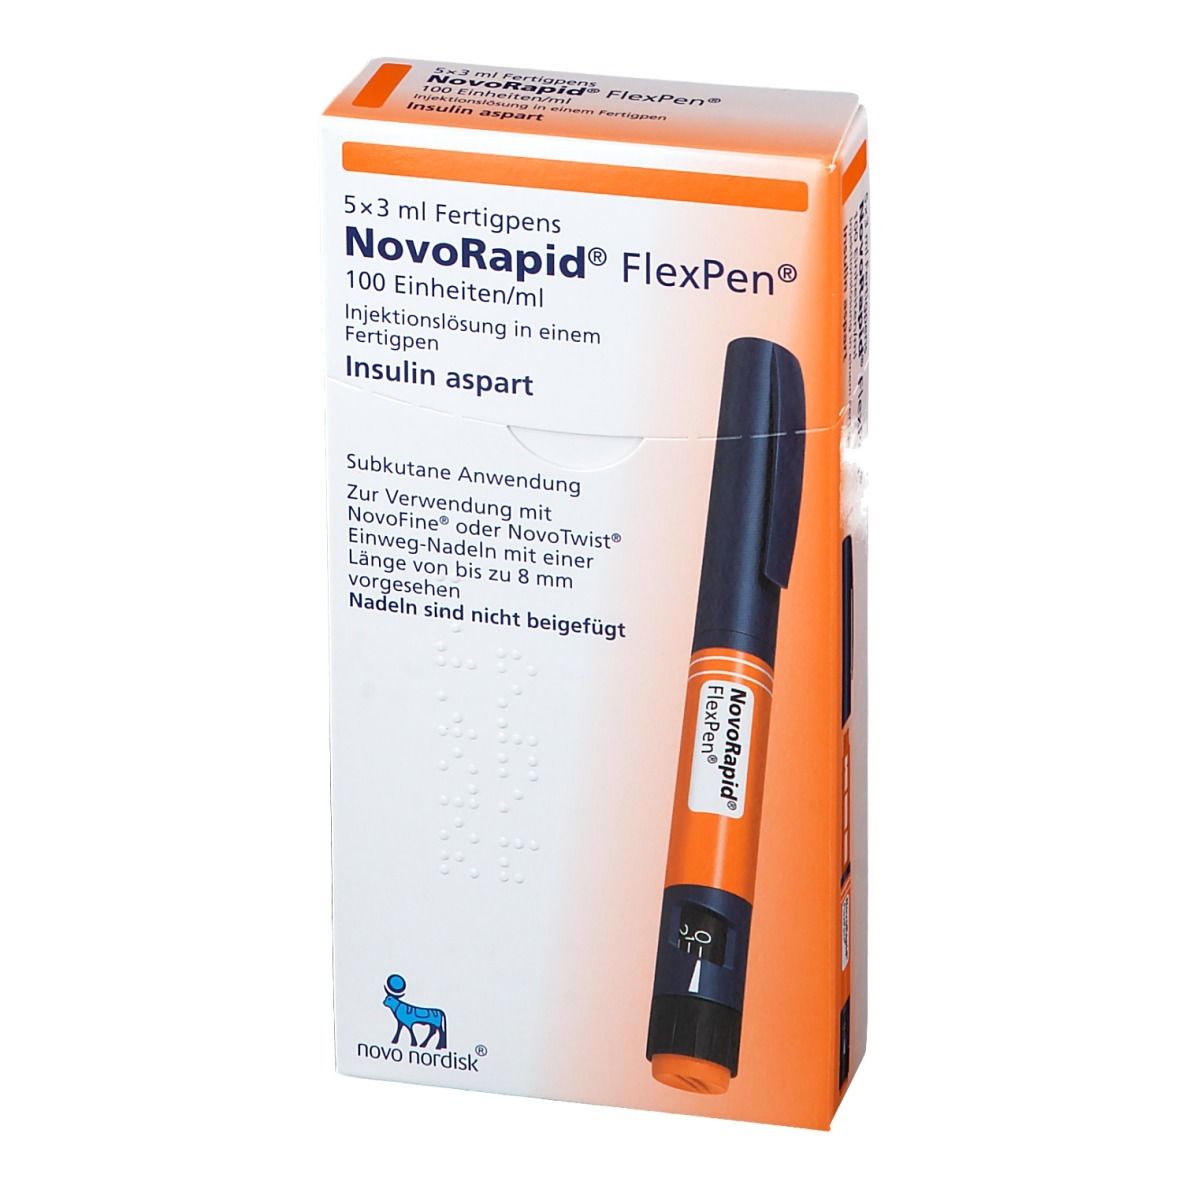 NovoRapid® FlexPen® 100 Einheiten/ml